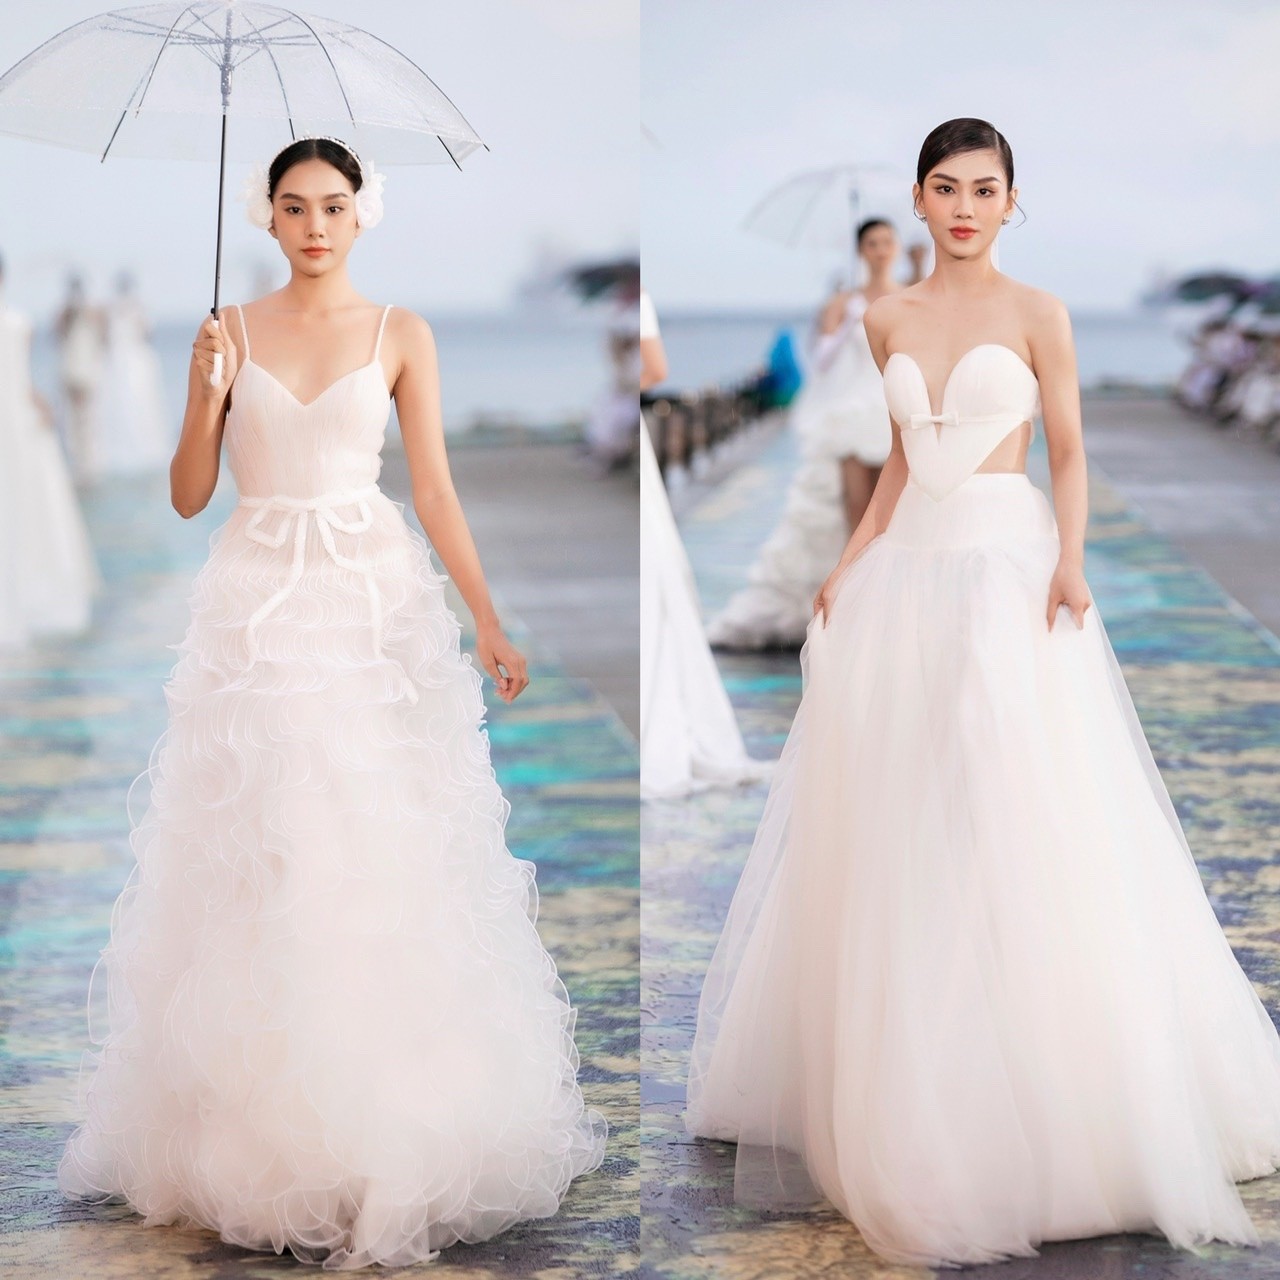 Hoa hậu Tiểu Vy, Á hậu Phương Anh đọ sắc khi diện váy cưới-7